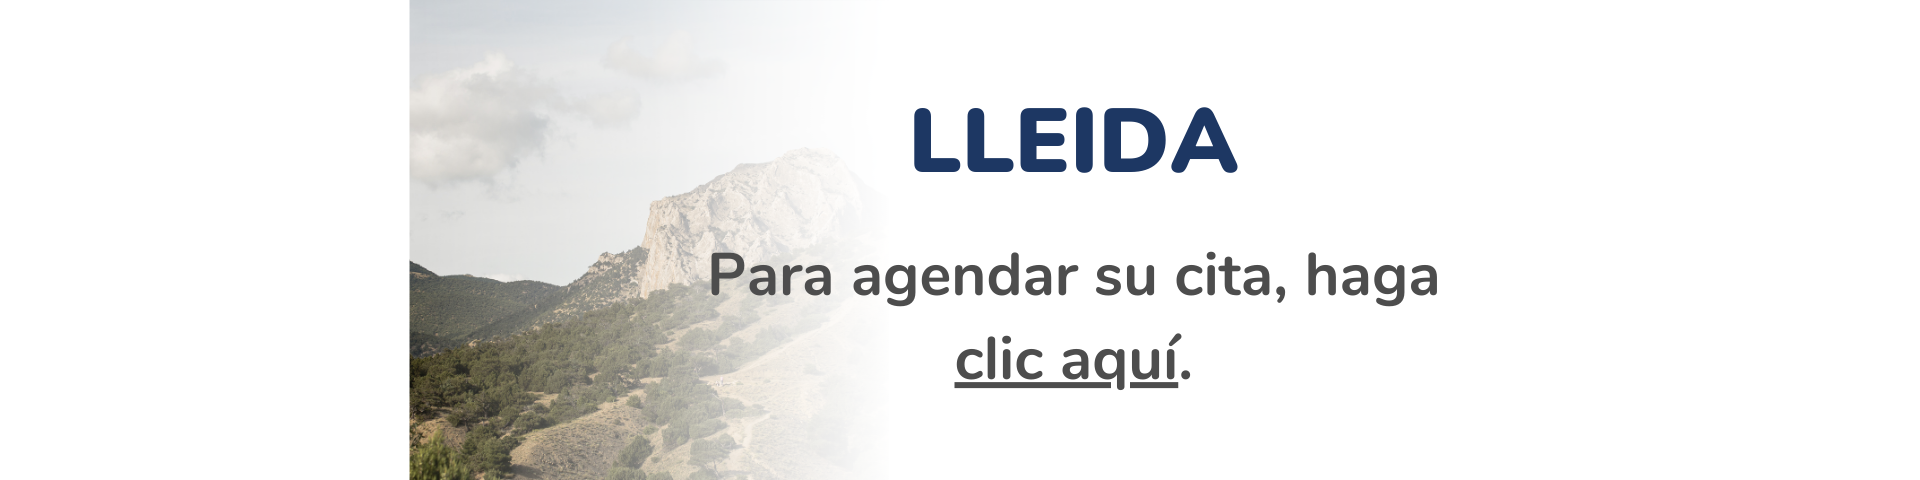 Lleida septiembre